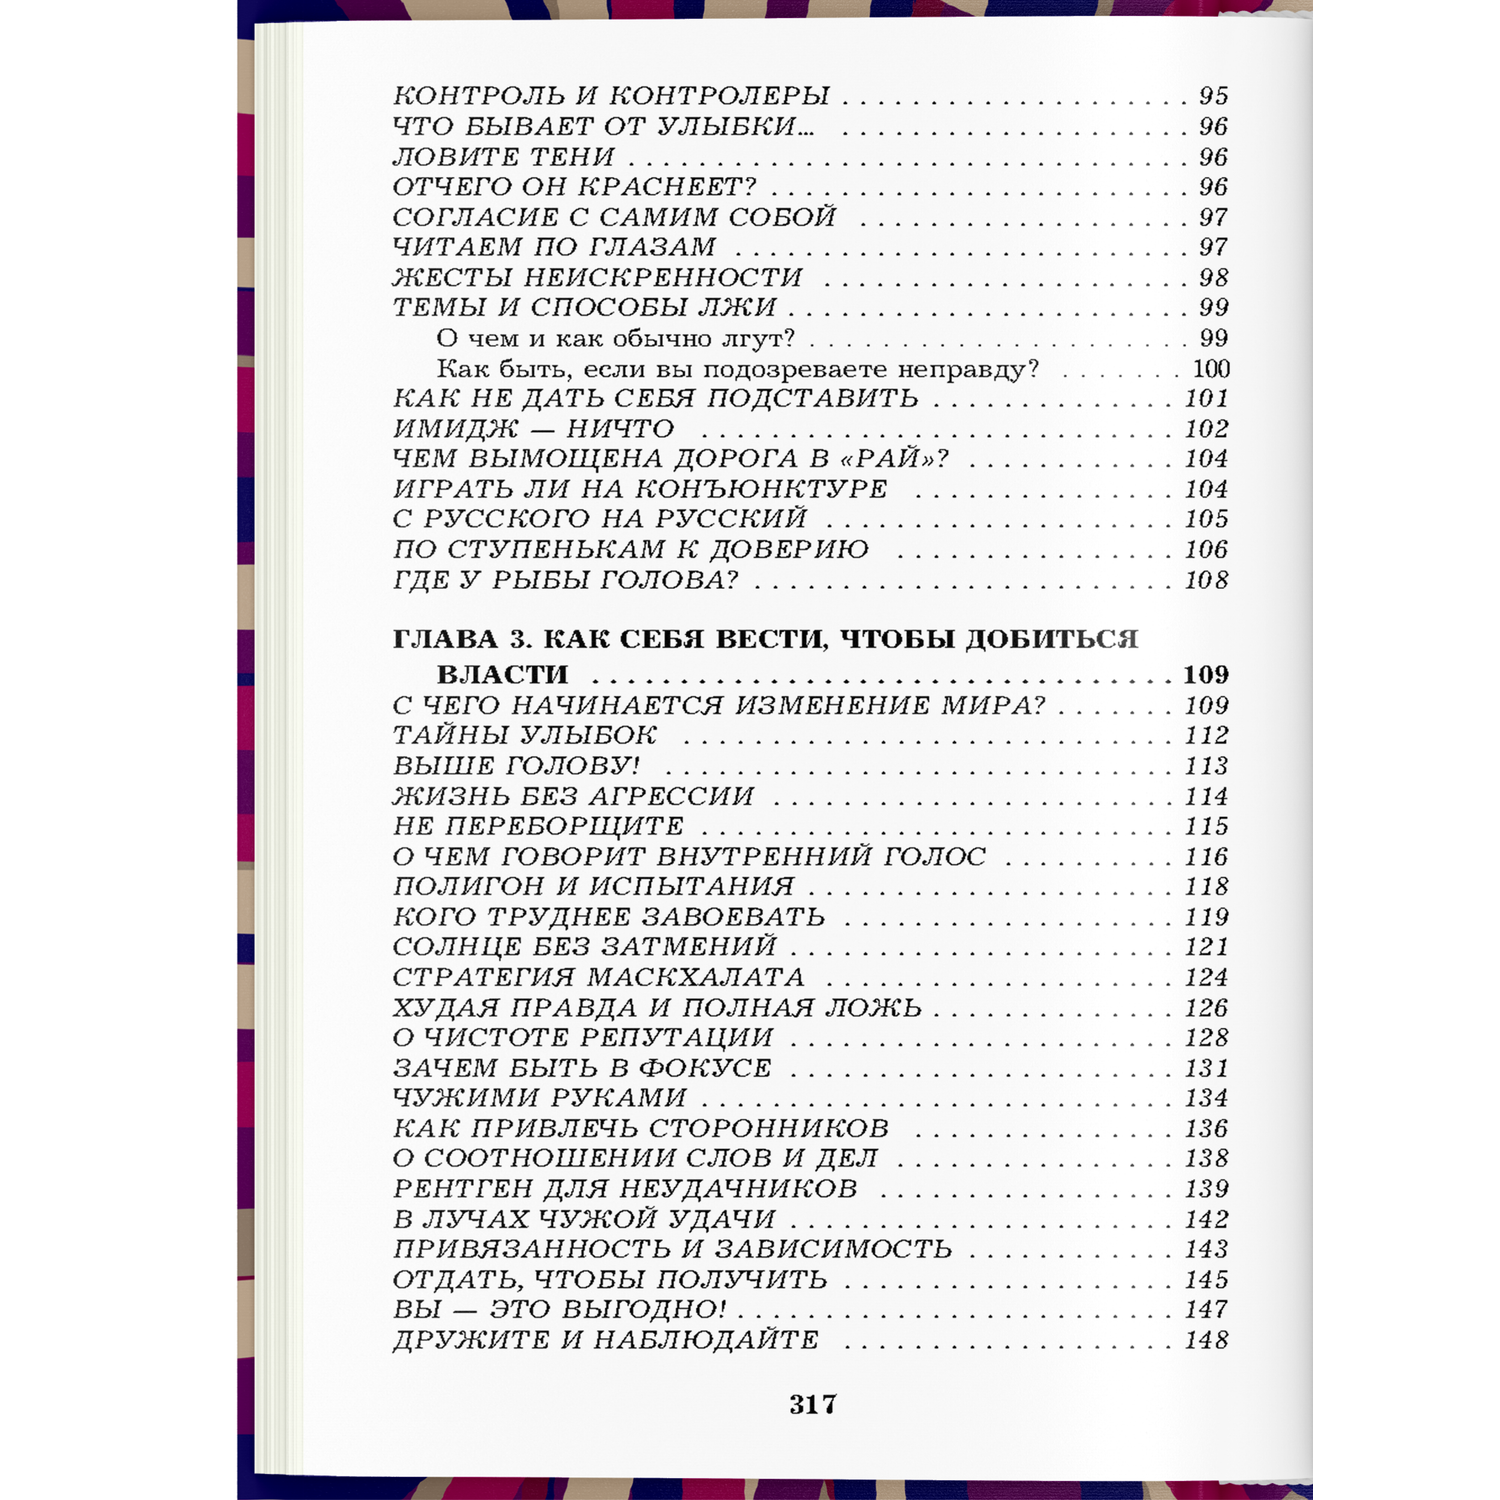 Книга Харвест Книга по психологии влияния общения саморазвития 330 способов успешного манипулирования - фото 13